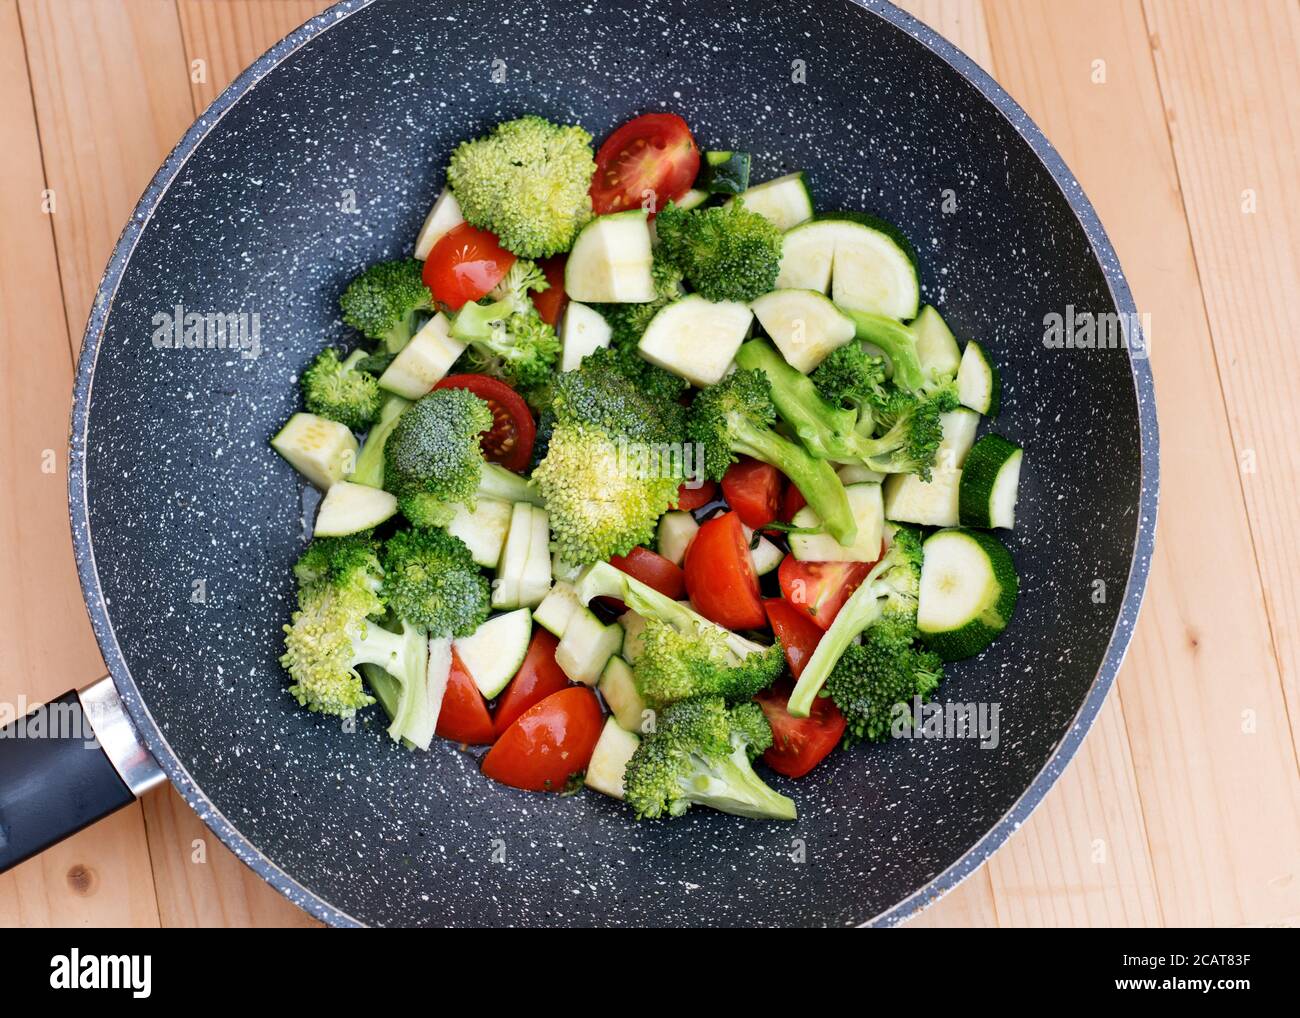 Grünes Gemüse, Brokkoli, Zucchini, Tomaten in einer VOC-Pfanne  Stockfotografie - Alamy